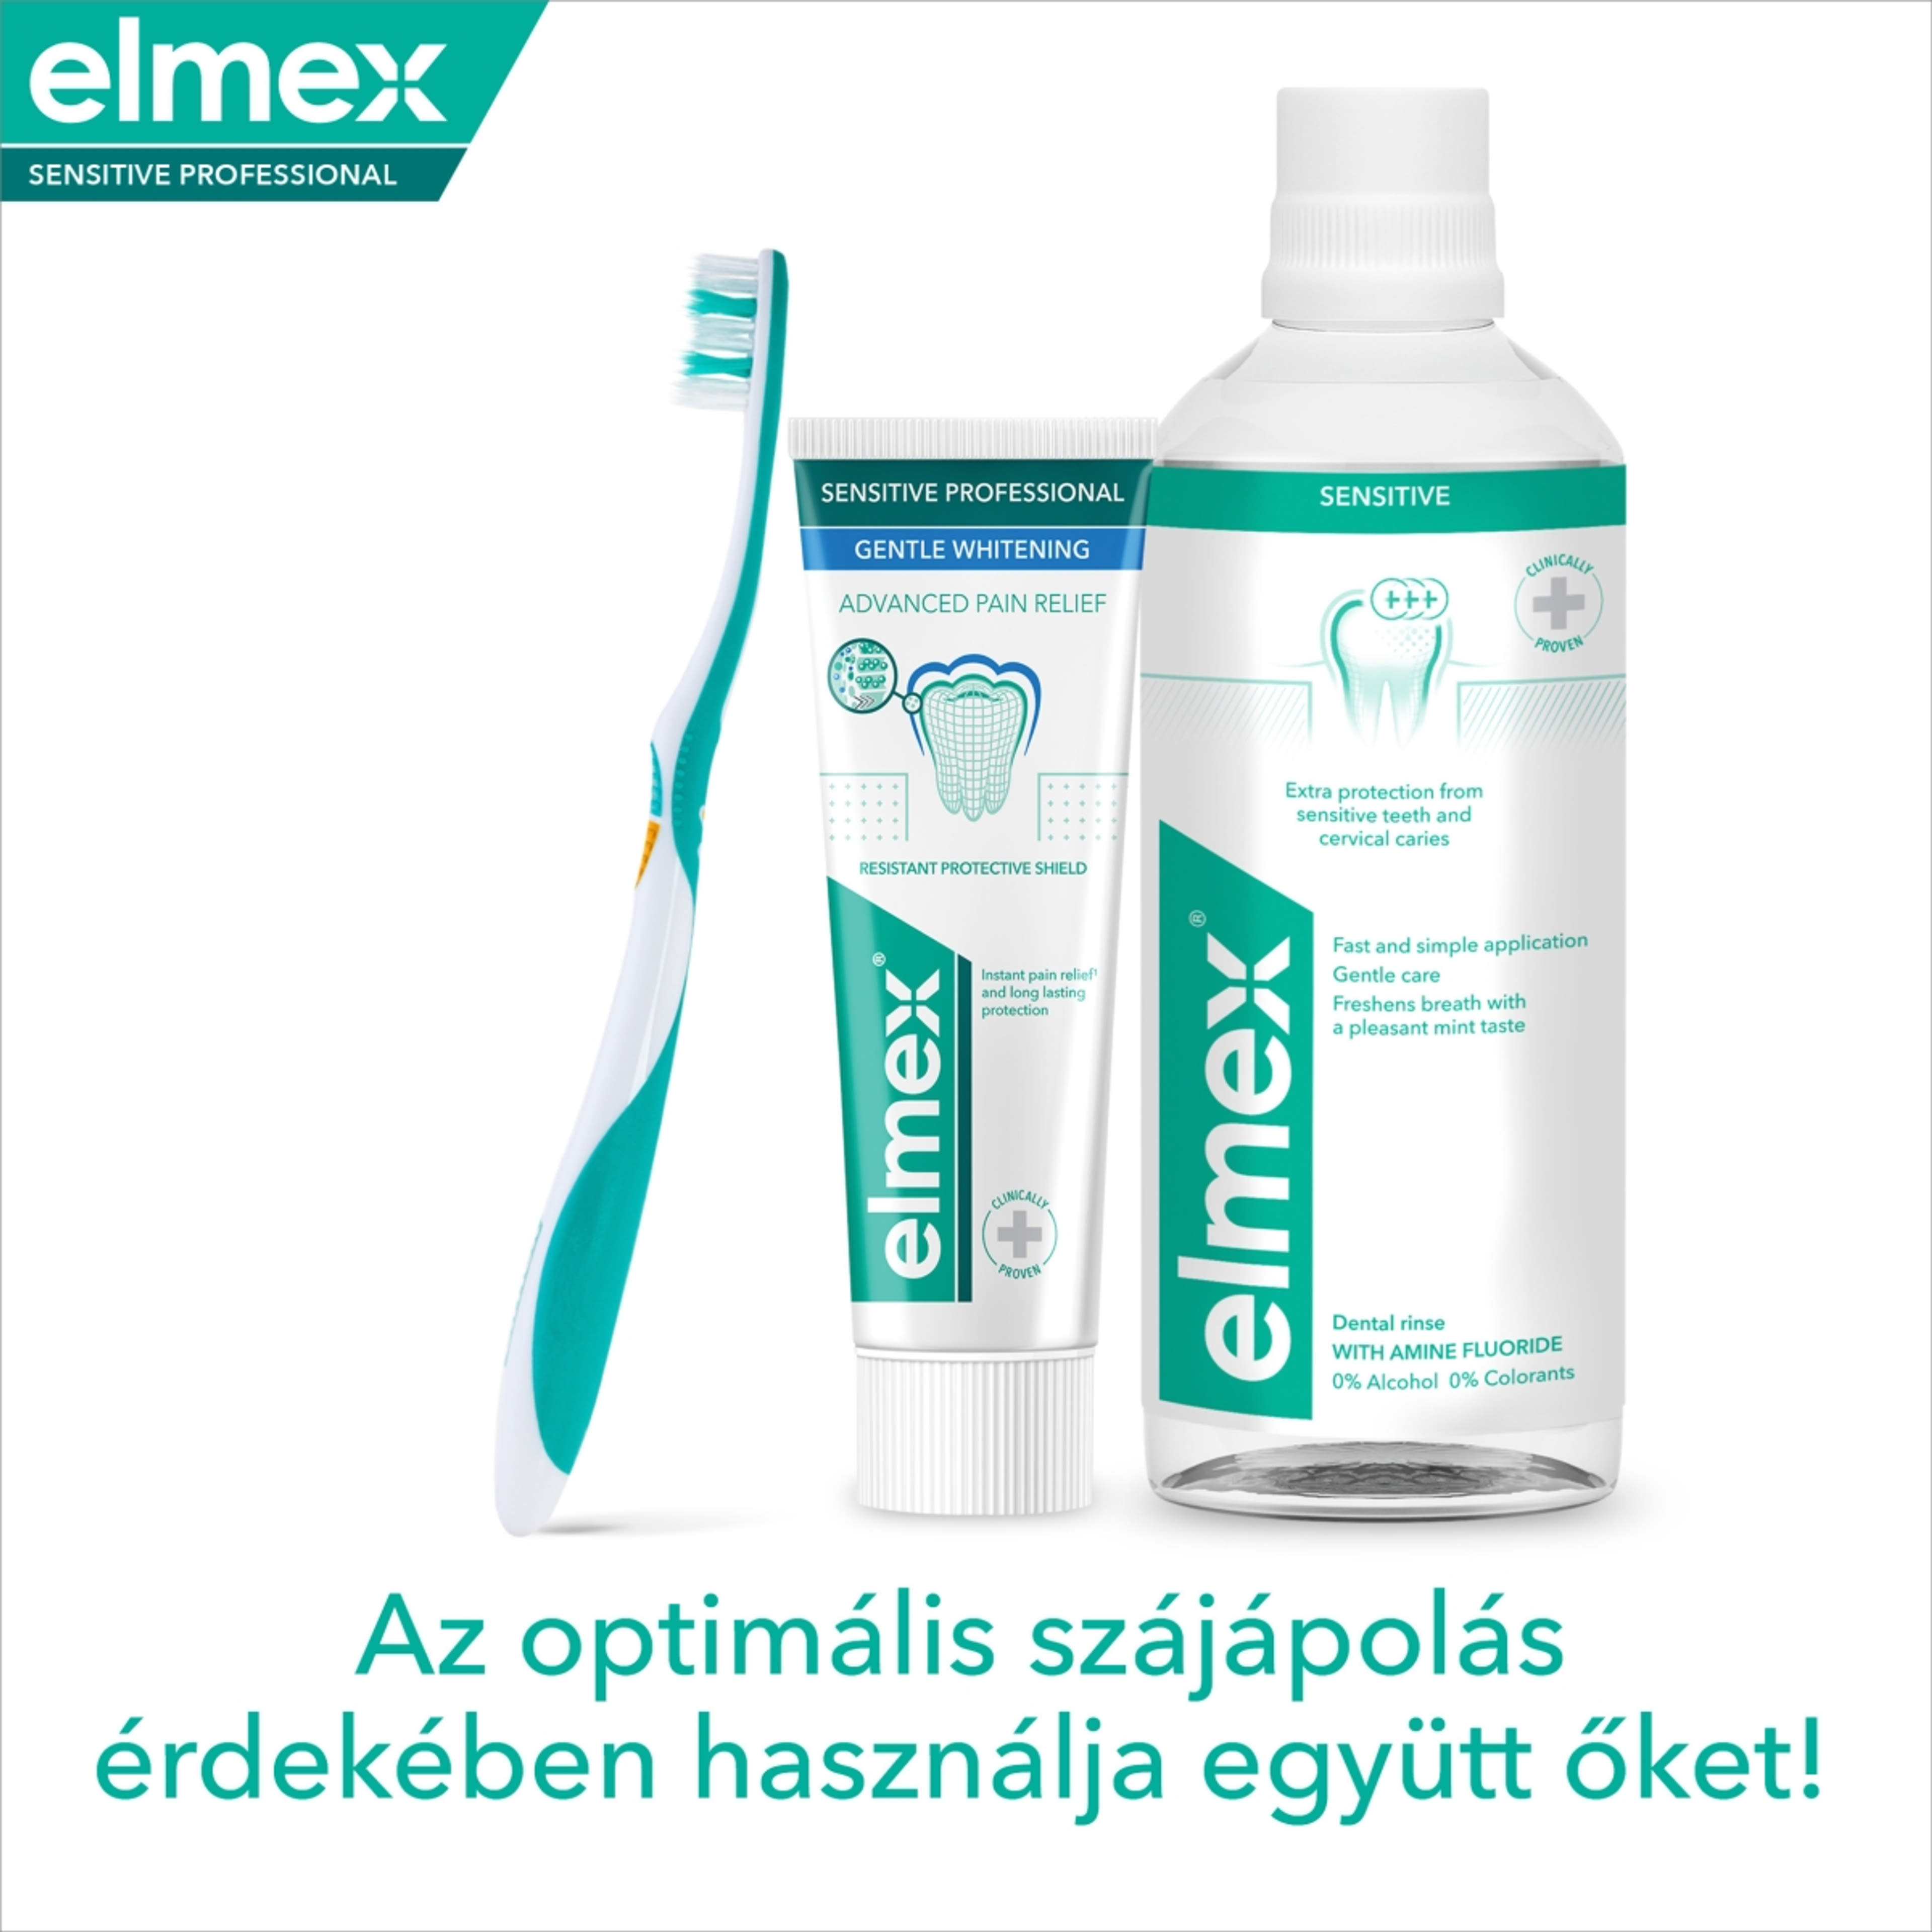 Elmex Sensitive Professional Whitening fogkrém érzékeny fogakra - 75 ml-8